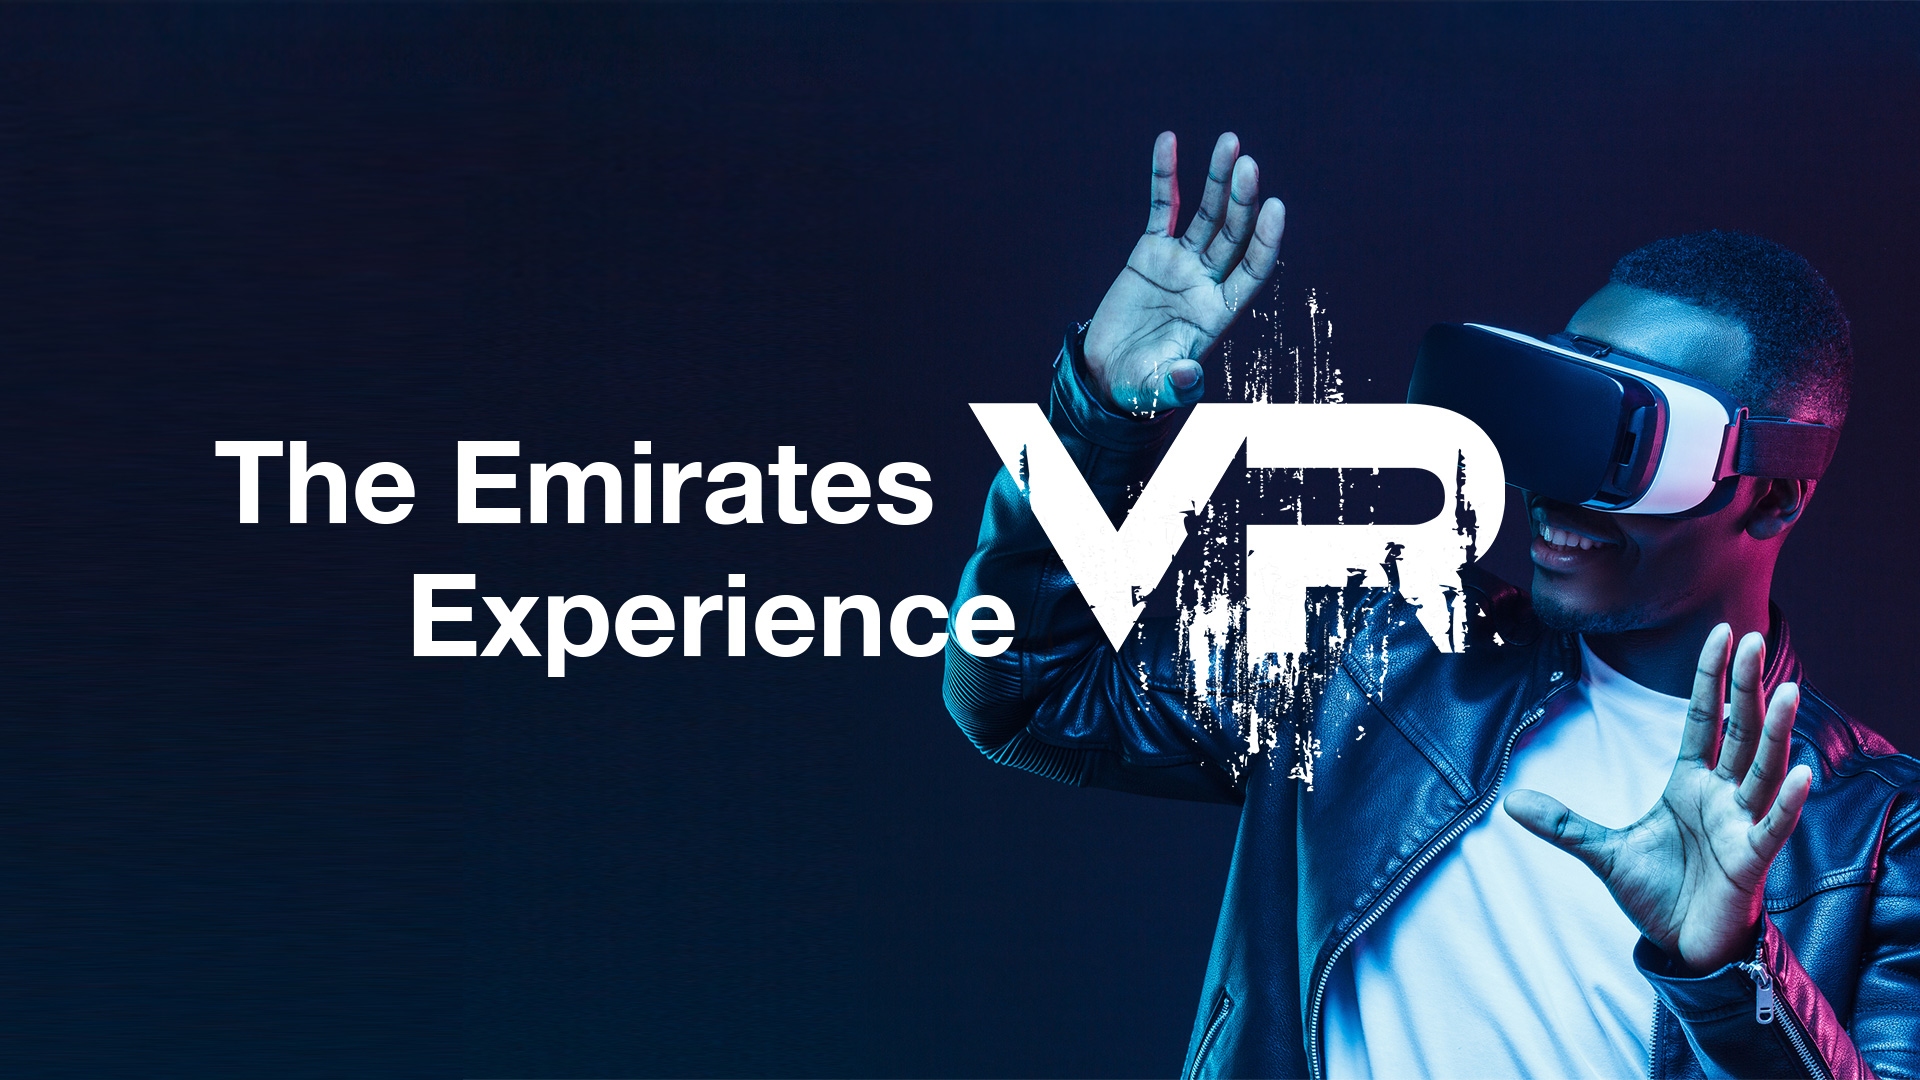 图片展示一位戴着虚拟现实头盔的人，伸手触摸虚拟物体，背景为深蓝色，旁边有“阿联酋VR体验”字样。